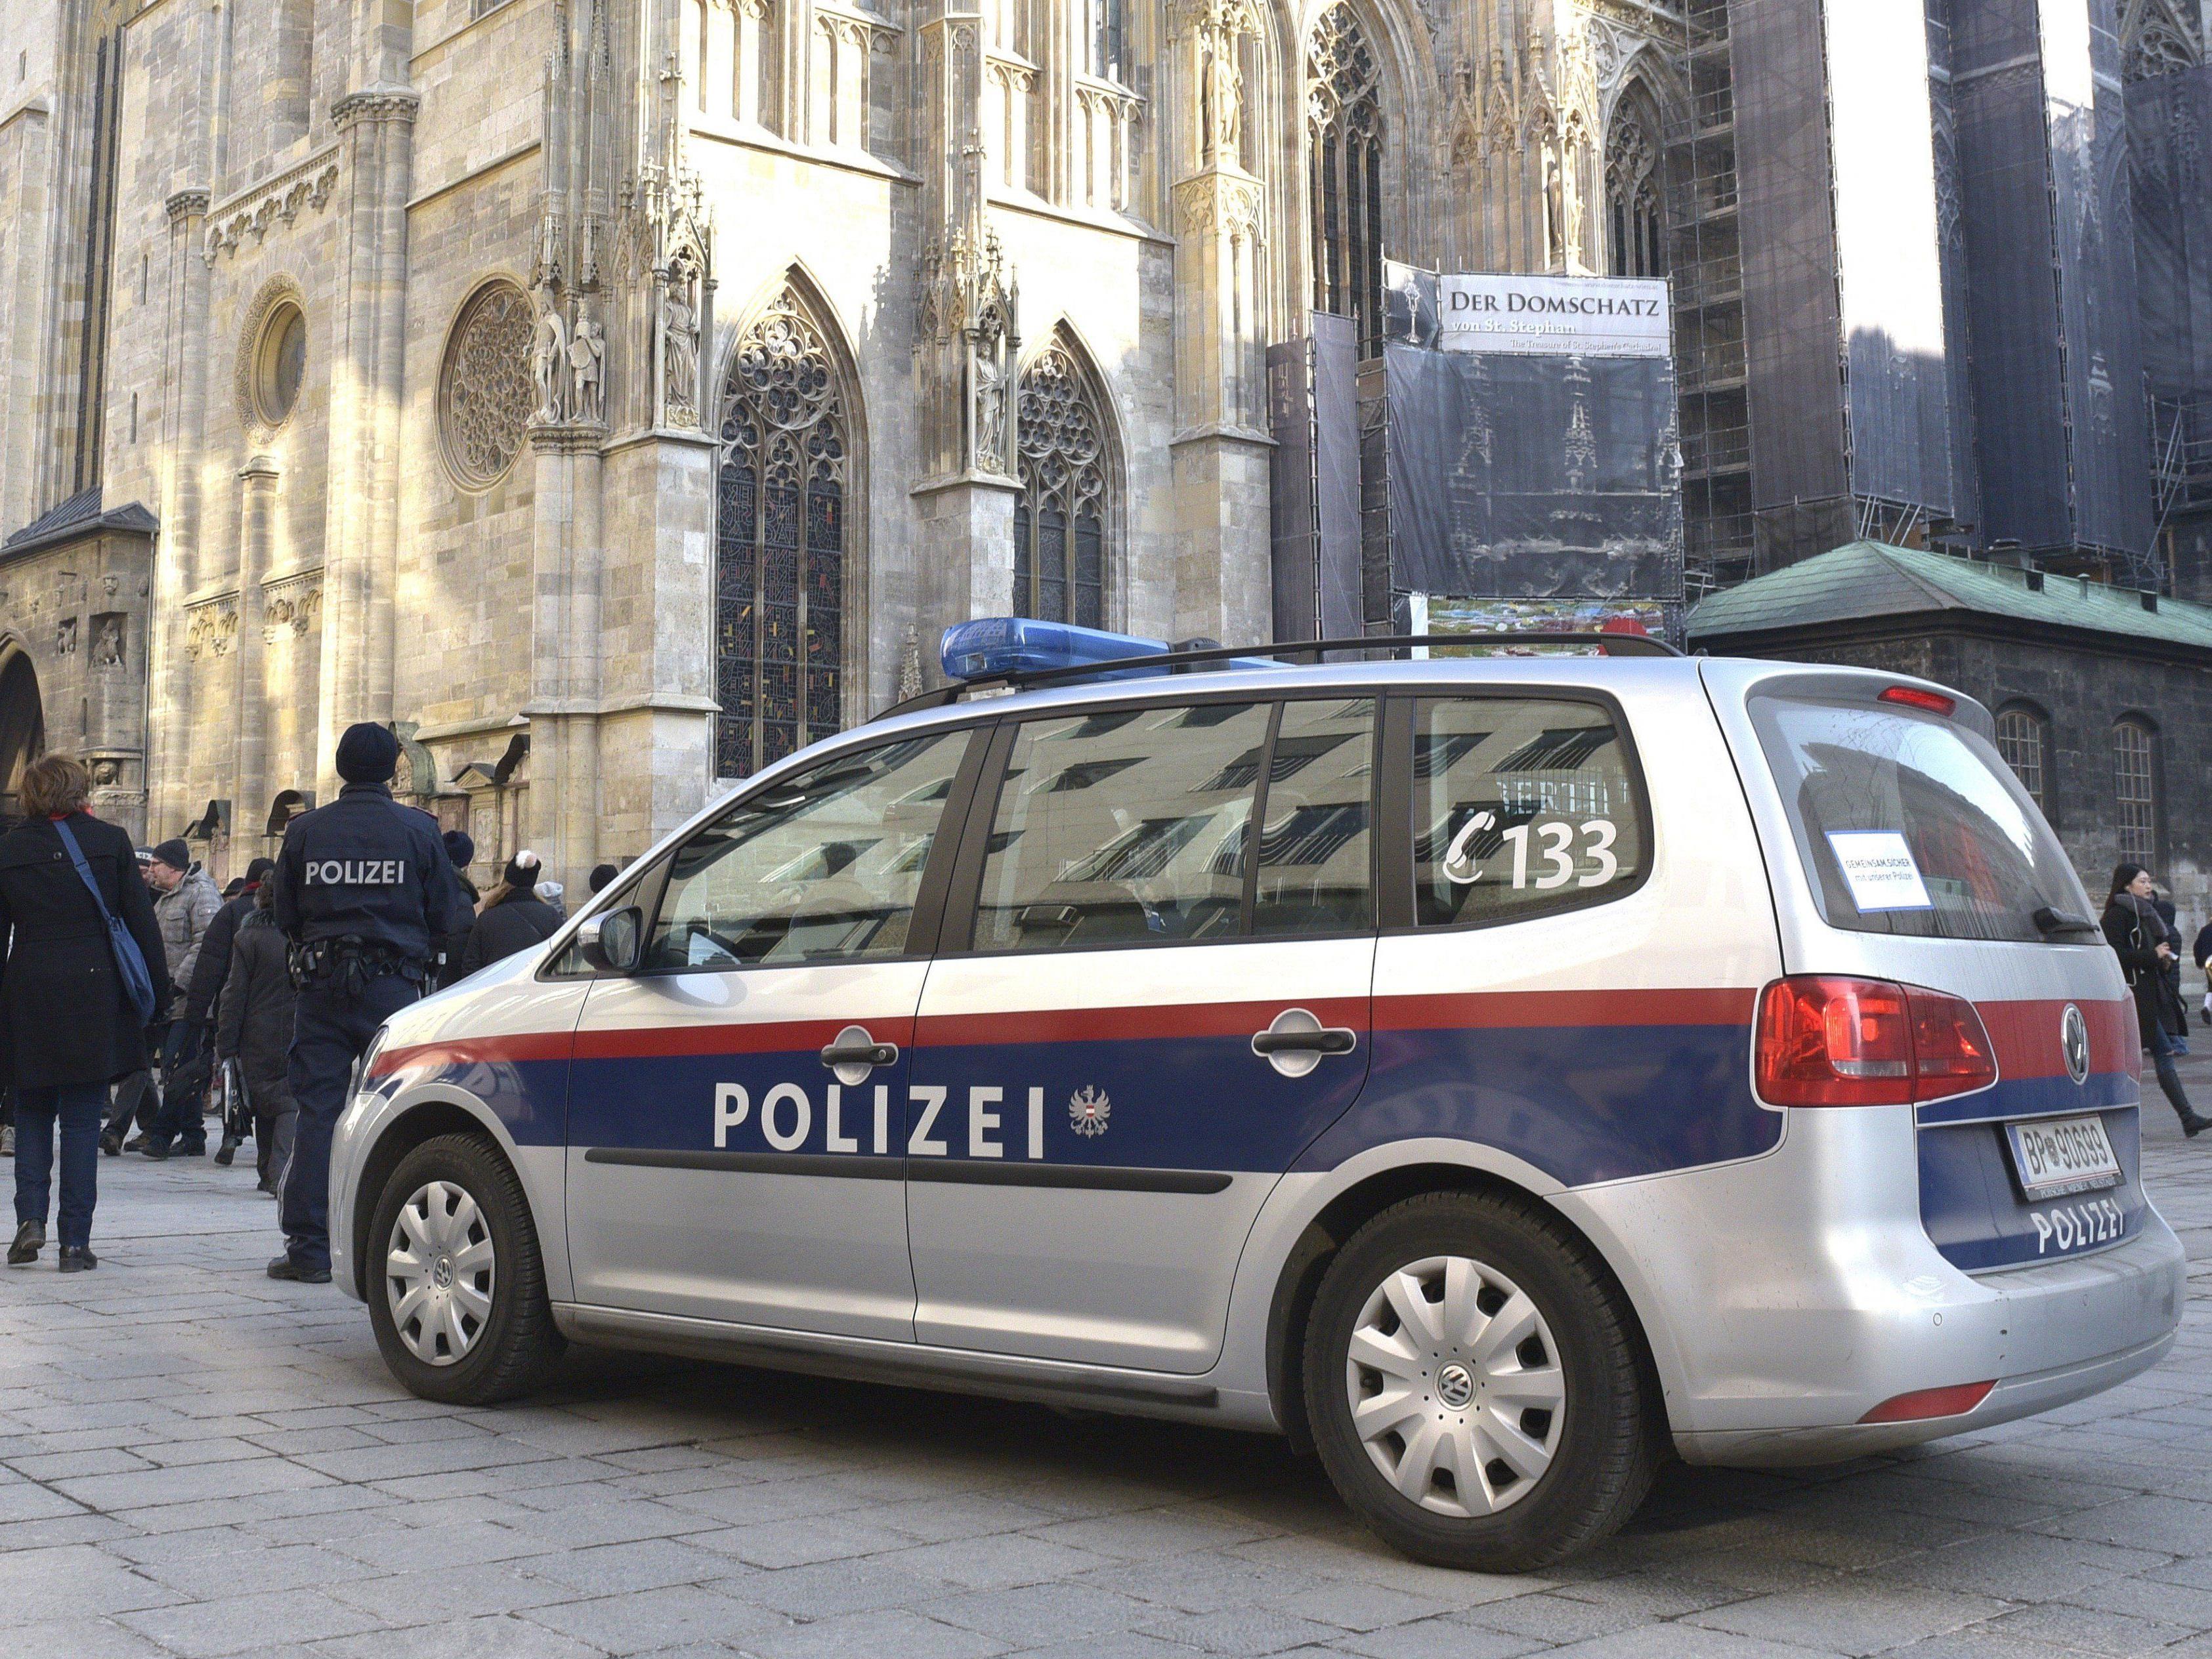 In Wien wurde die Polizeipräsenz nach einem verhinderten Terror-Attentat zuletzt erhöht